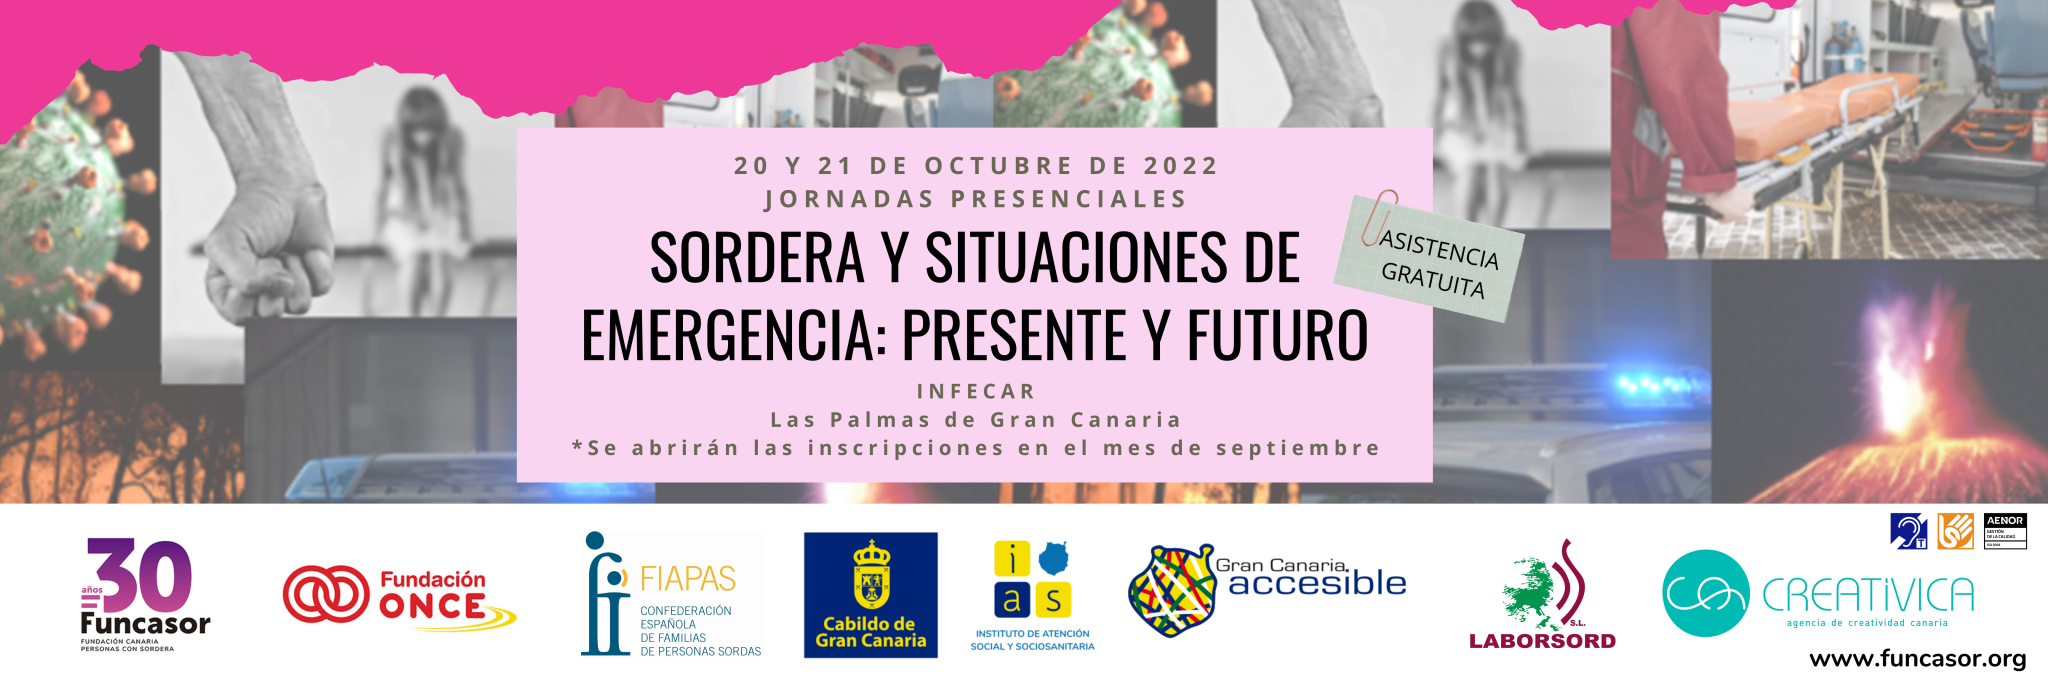 Banner informativo de las Jornadas Sordera y situaciones de emergencia: presente y futuro de la Fundación Funcasor